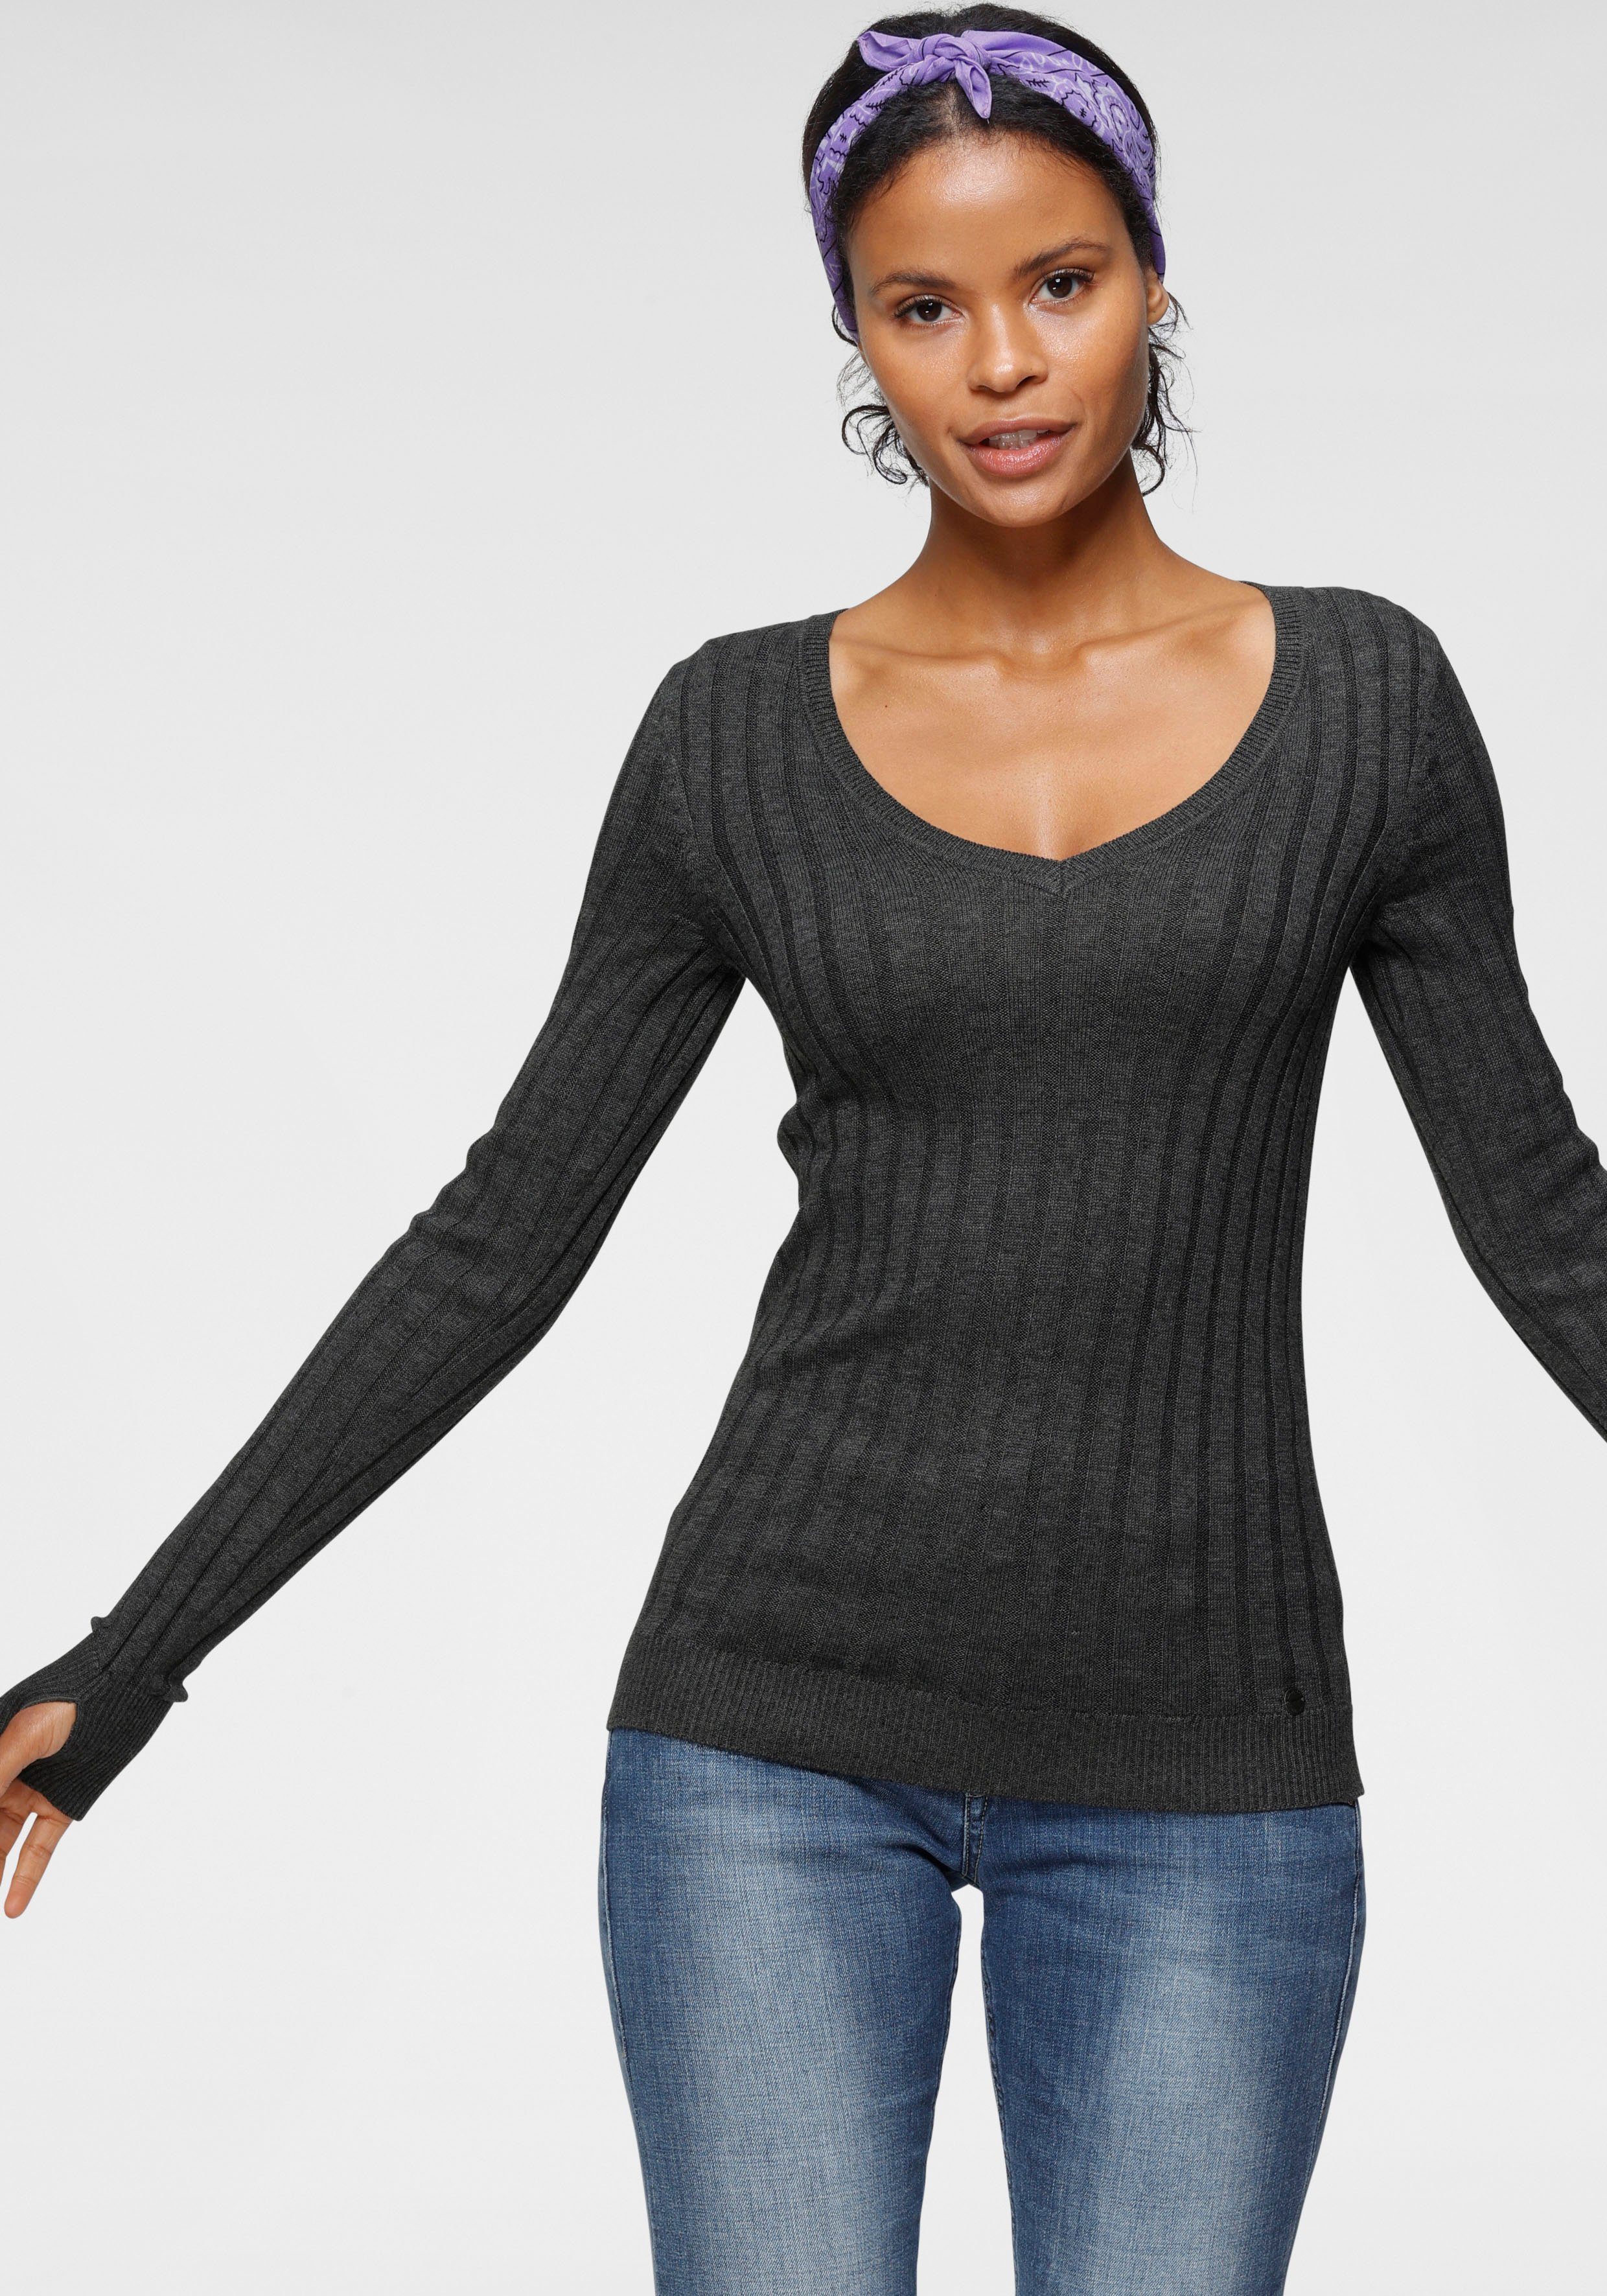 Günstige Pullover für Damen kaufen » Pullover SALE | OTTO